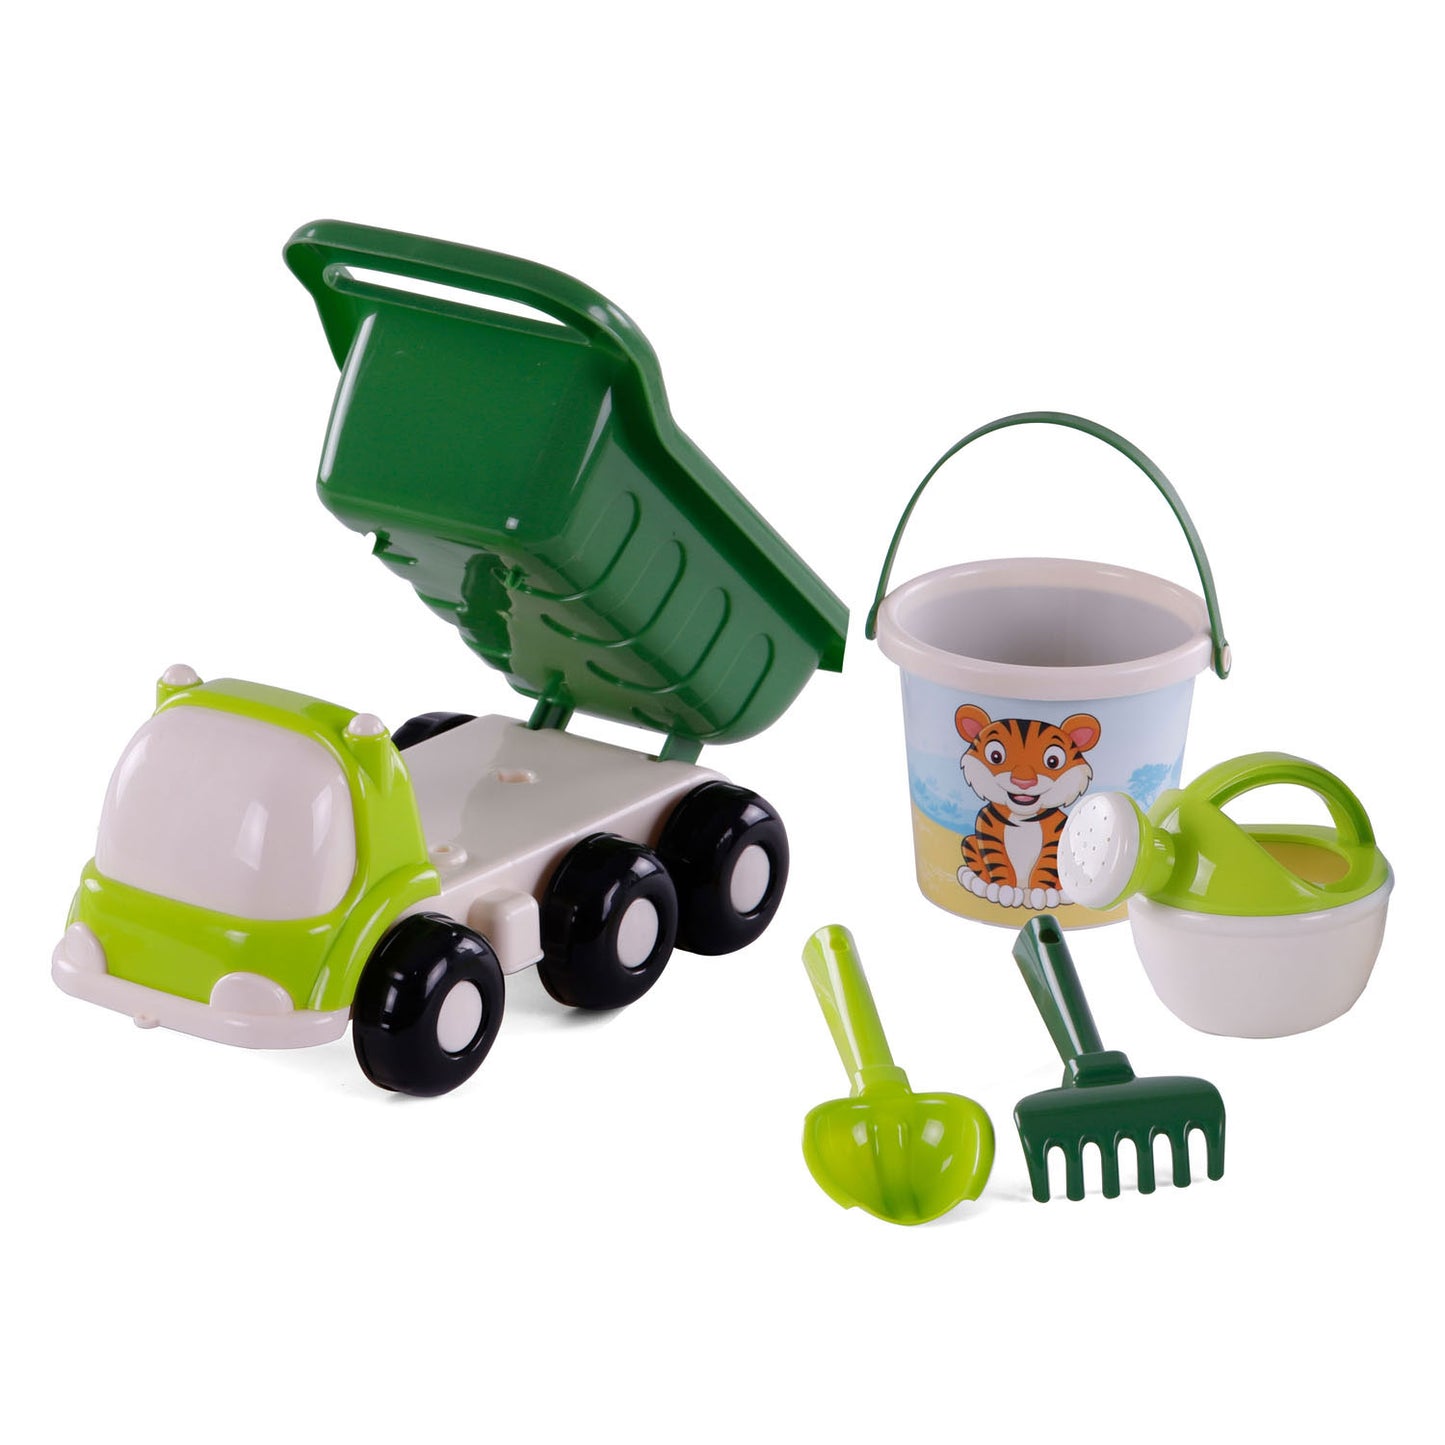 Cavallino Toys Cavallino Beach Kiepwagen con cubo de verde, 5dlg.